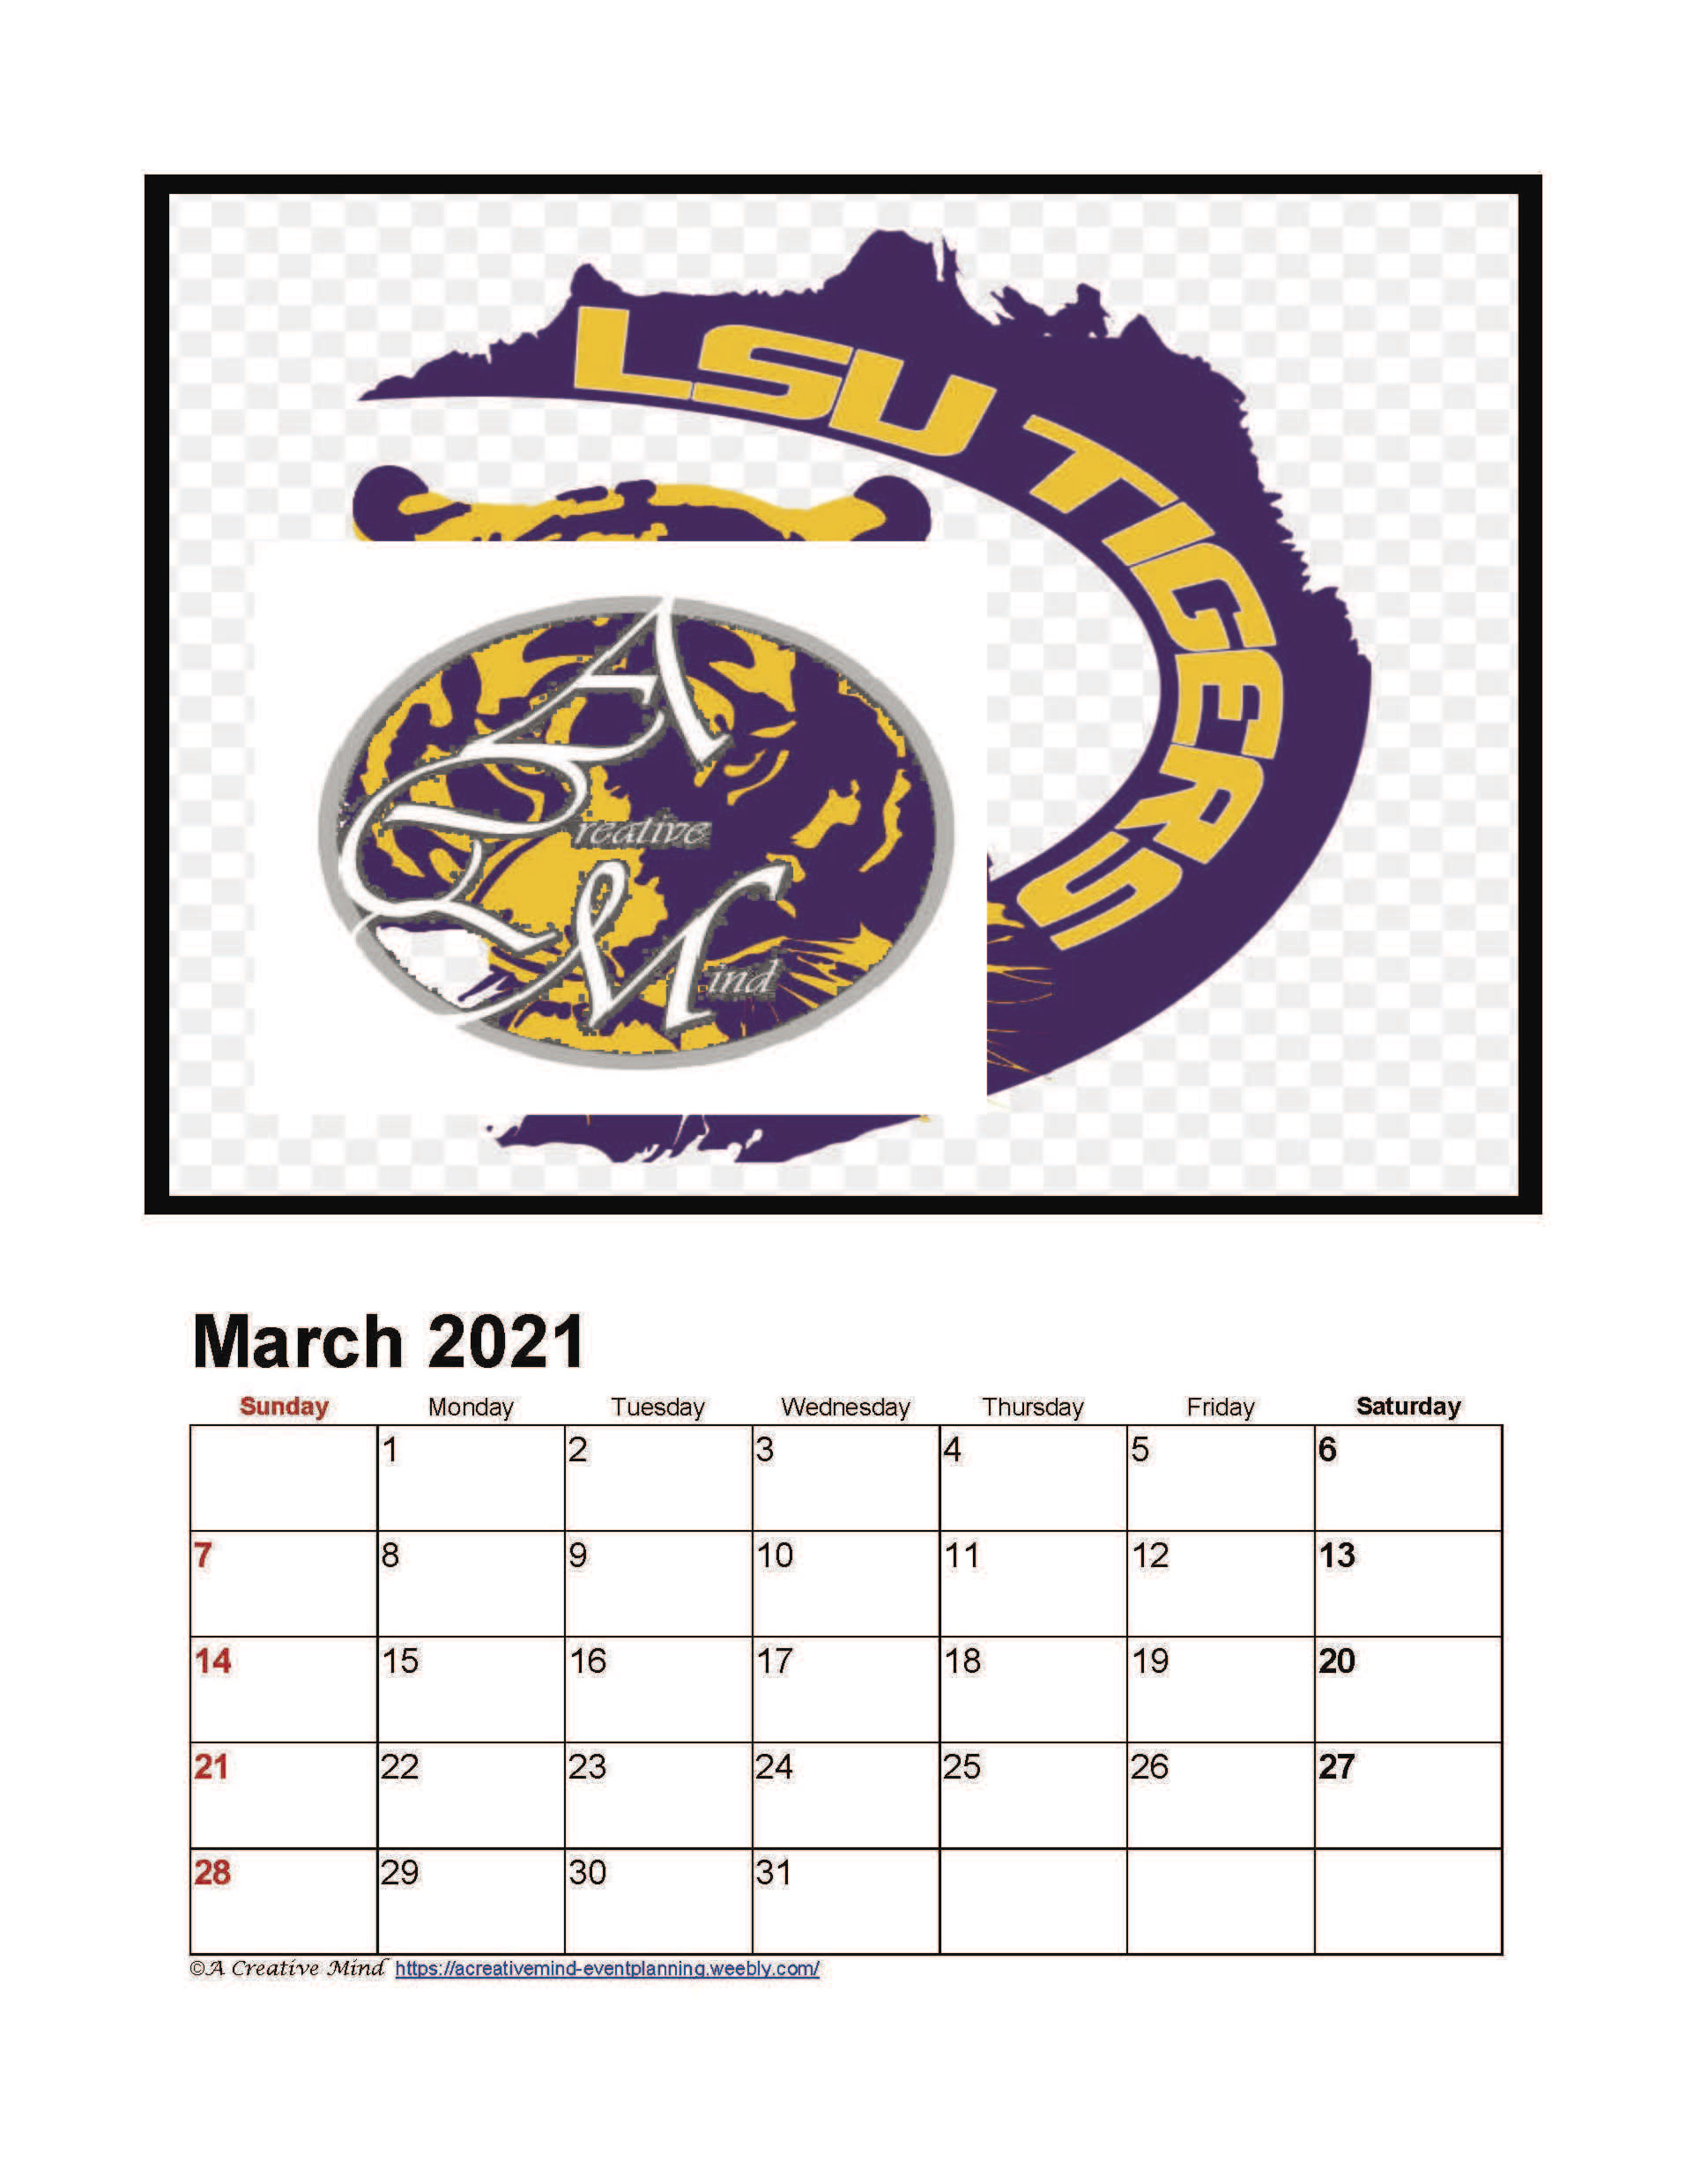 2021 LSU Collegiate Wall Calendar